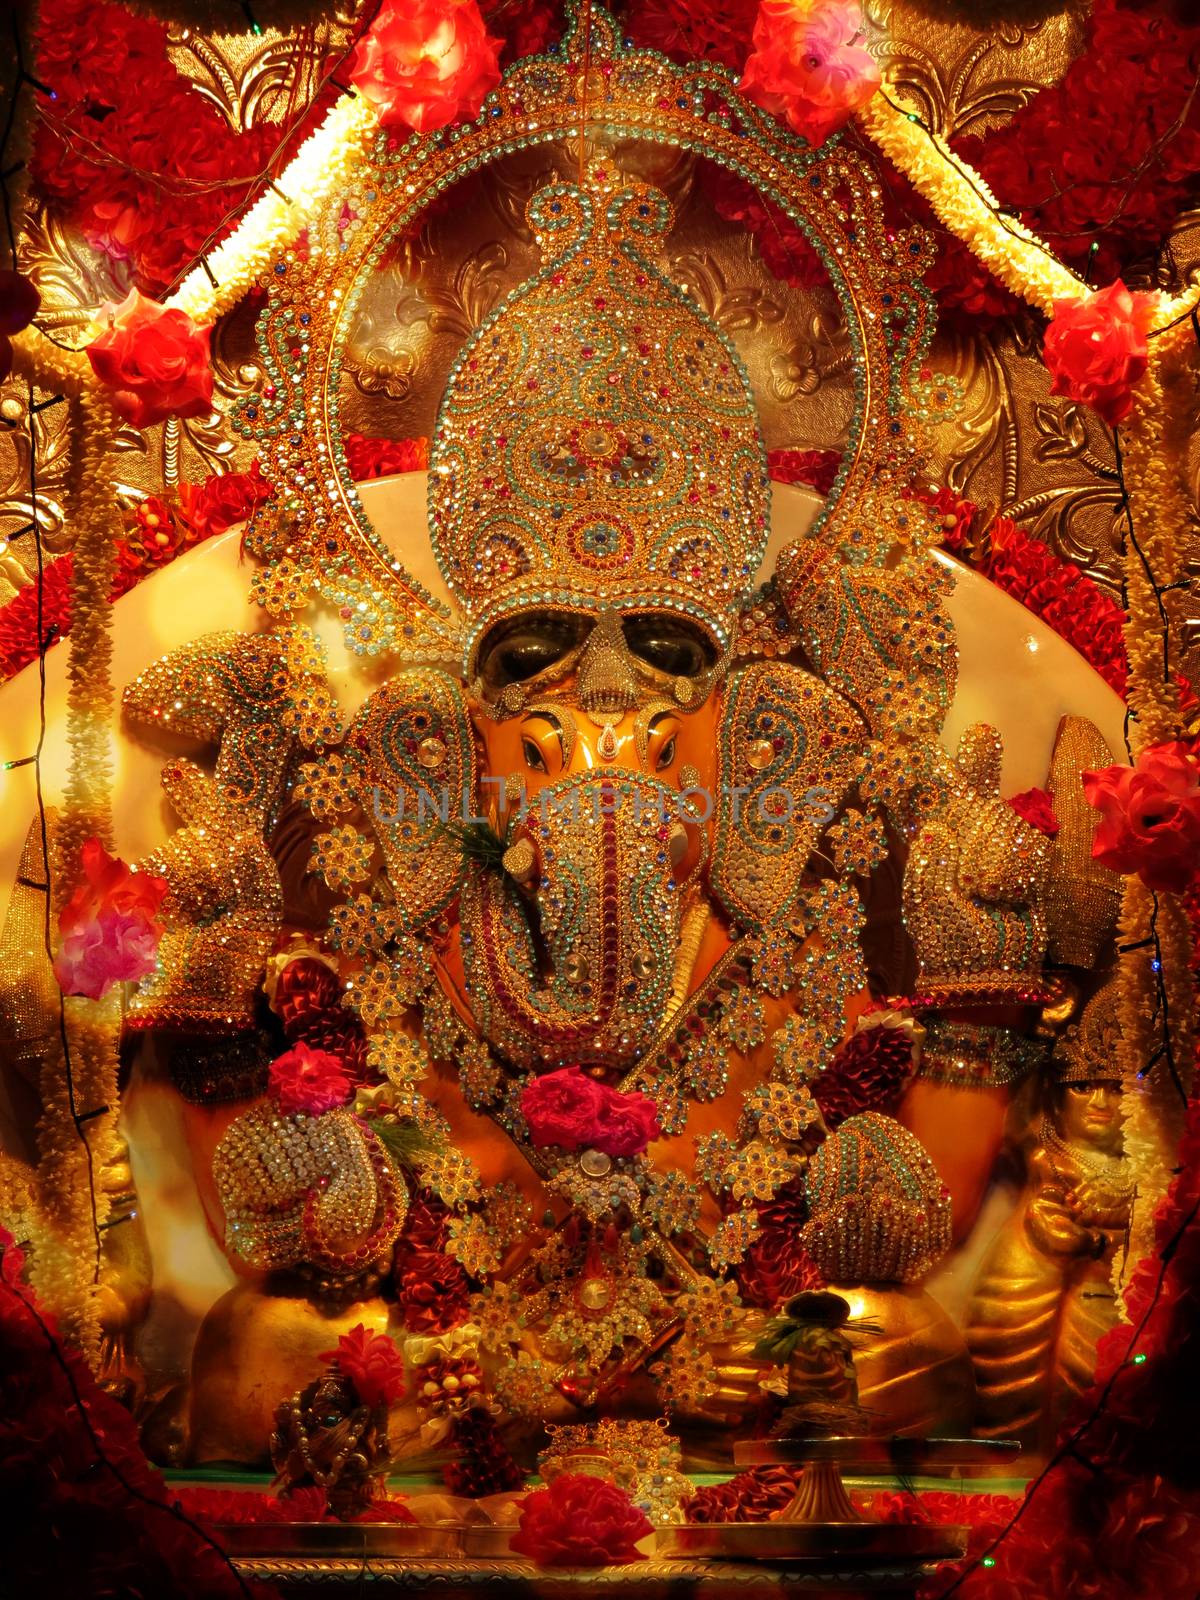 A lord Ganesha idol studded with precious gemstones in a Hindu temple during Ganesh festival                               